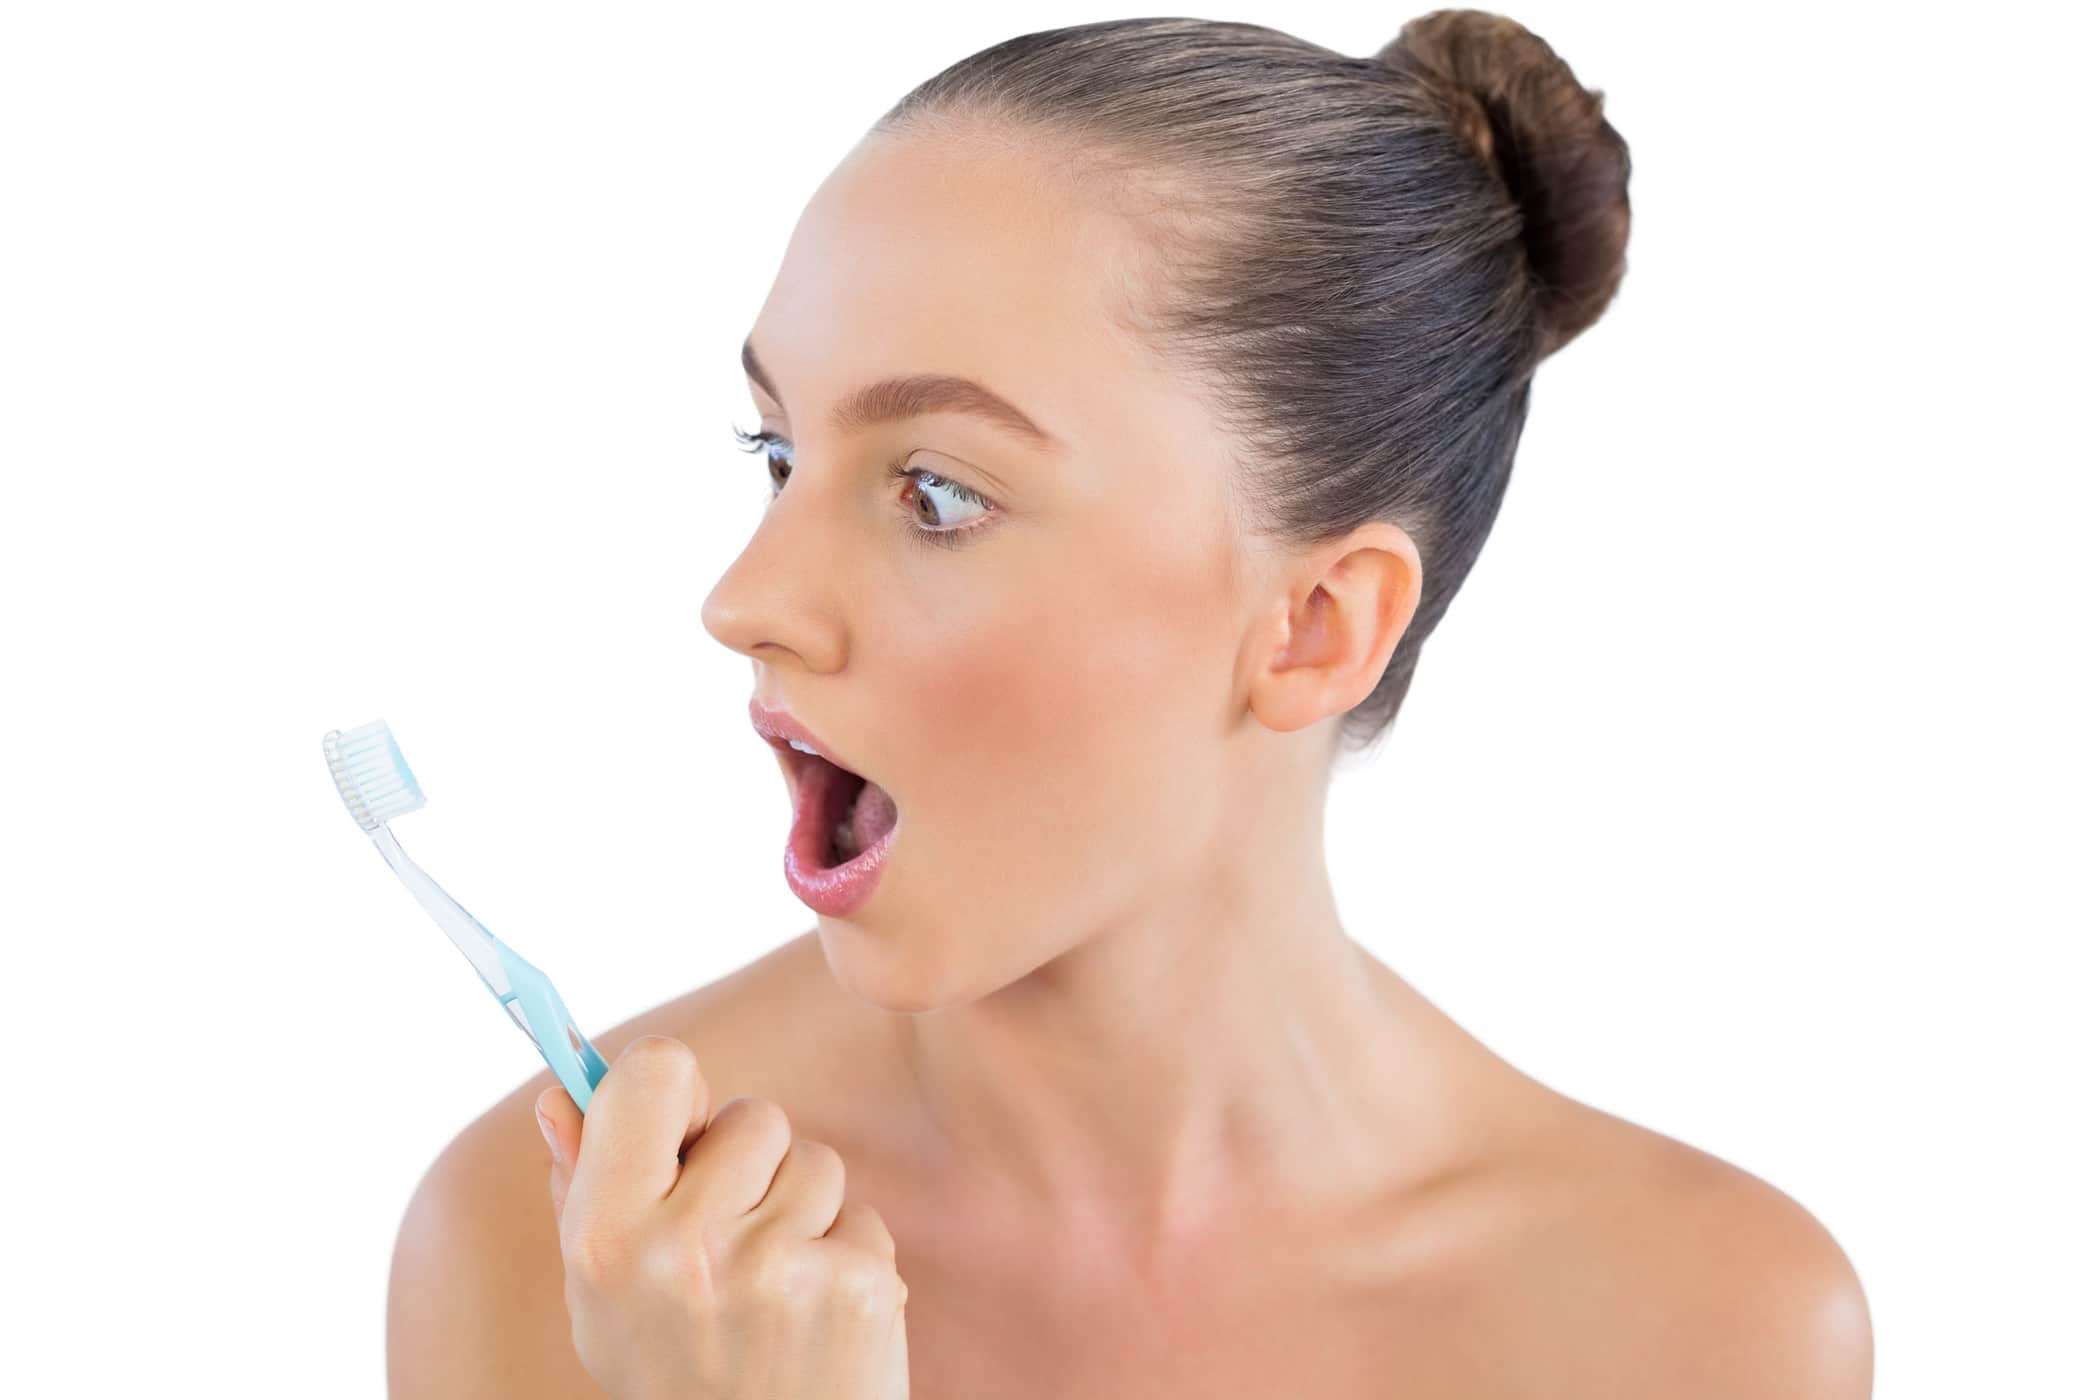 ทำไมบางคนรู้สึกคลื่นไส้เมื่อแปรงฟัน?